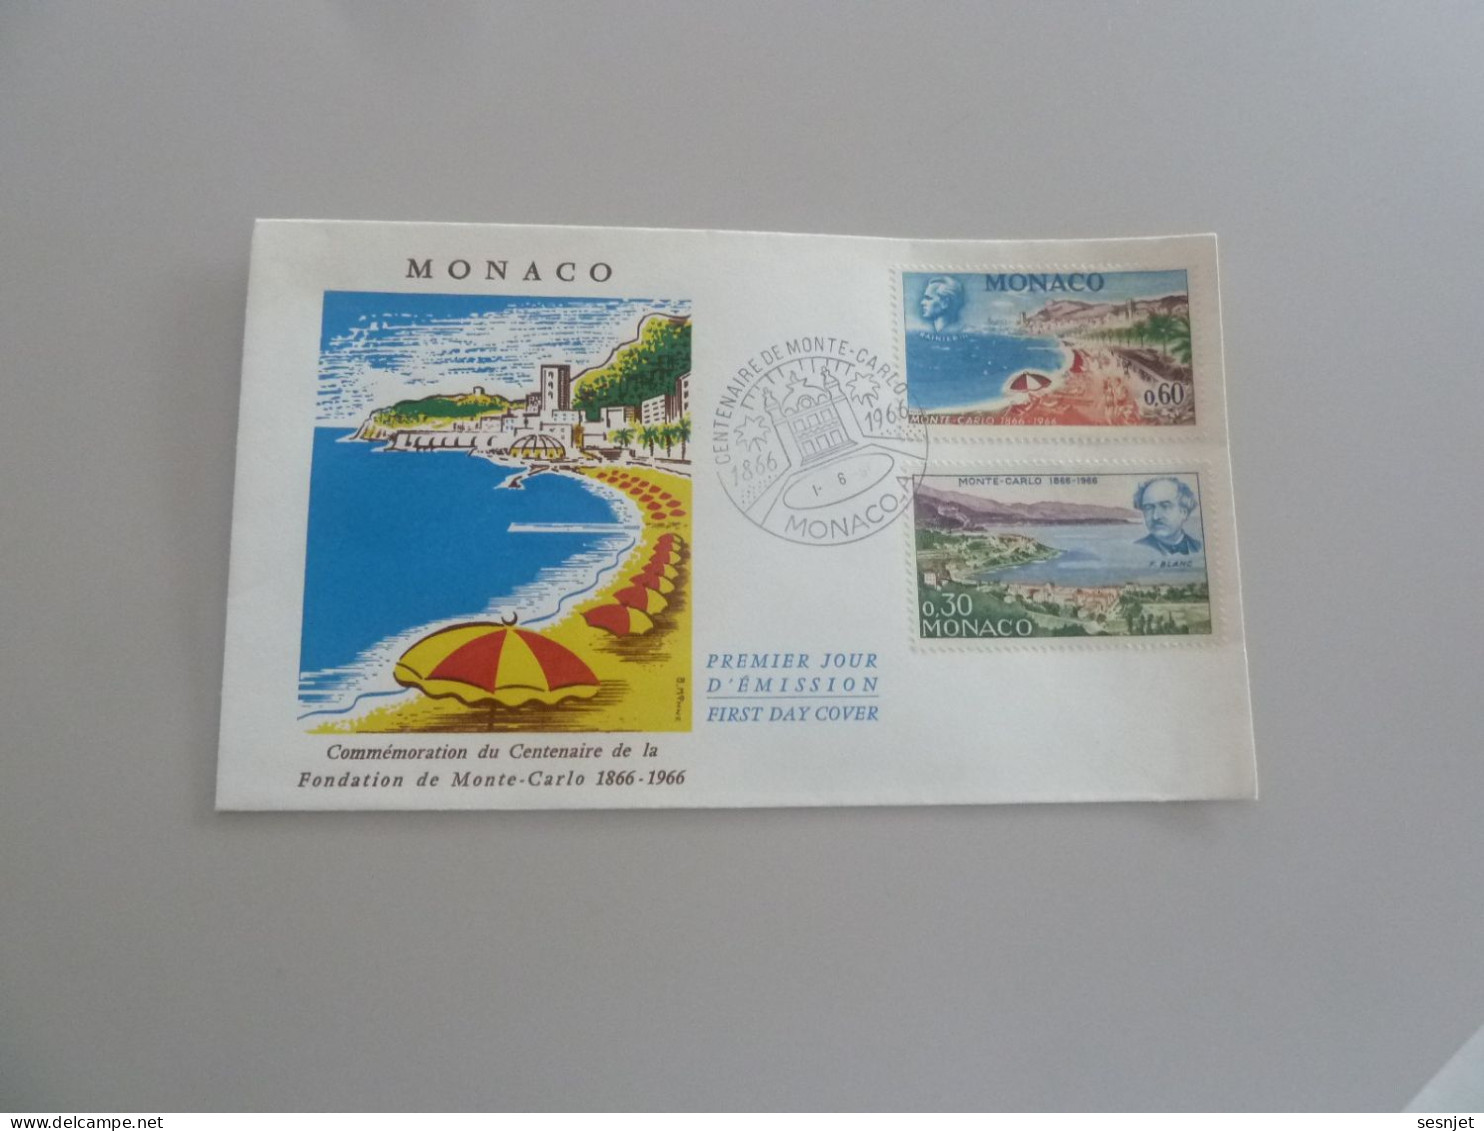 Monaco - Centenaire De La Fondation - 60c. Et 30c. - Yt 694 Et 692 - Enveloppe Premier Jour D'Emission - Année 1966 - - FDC